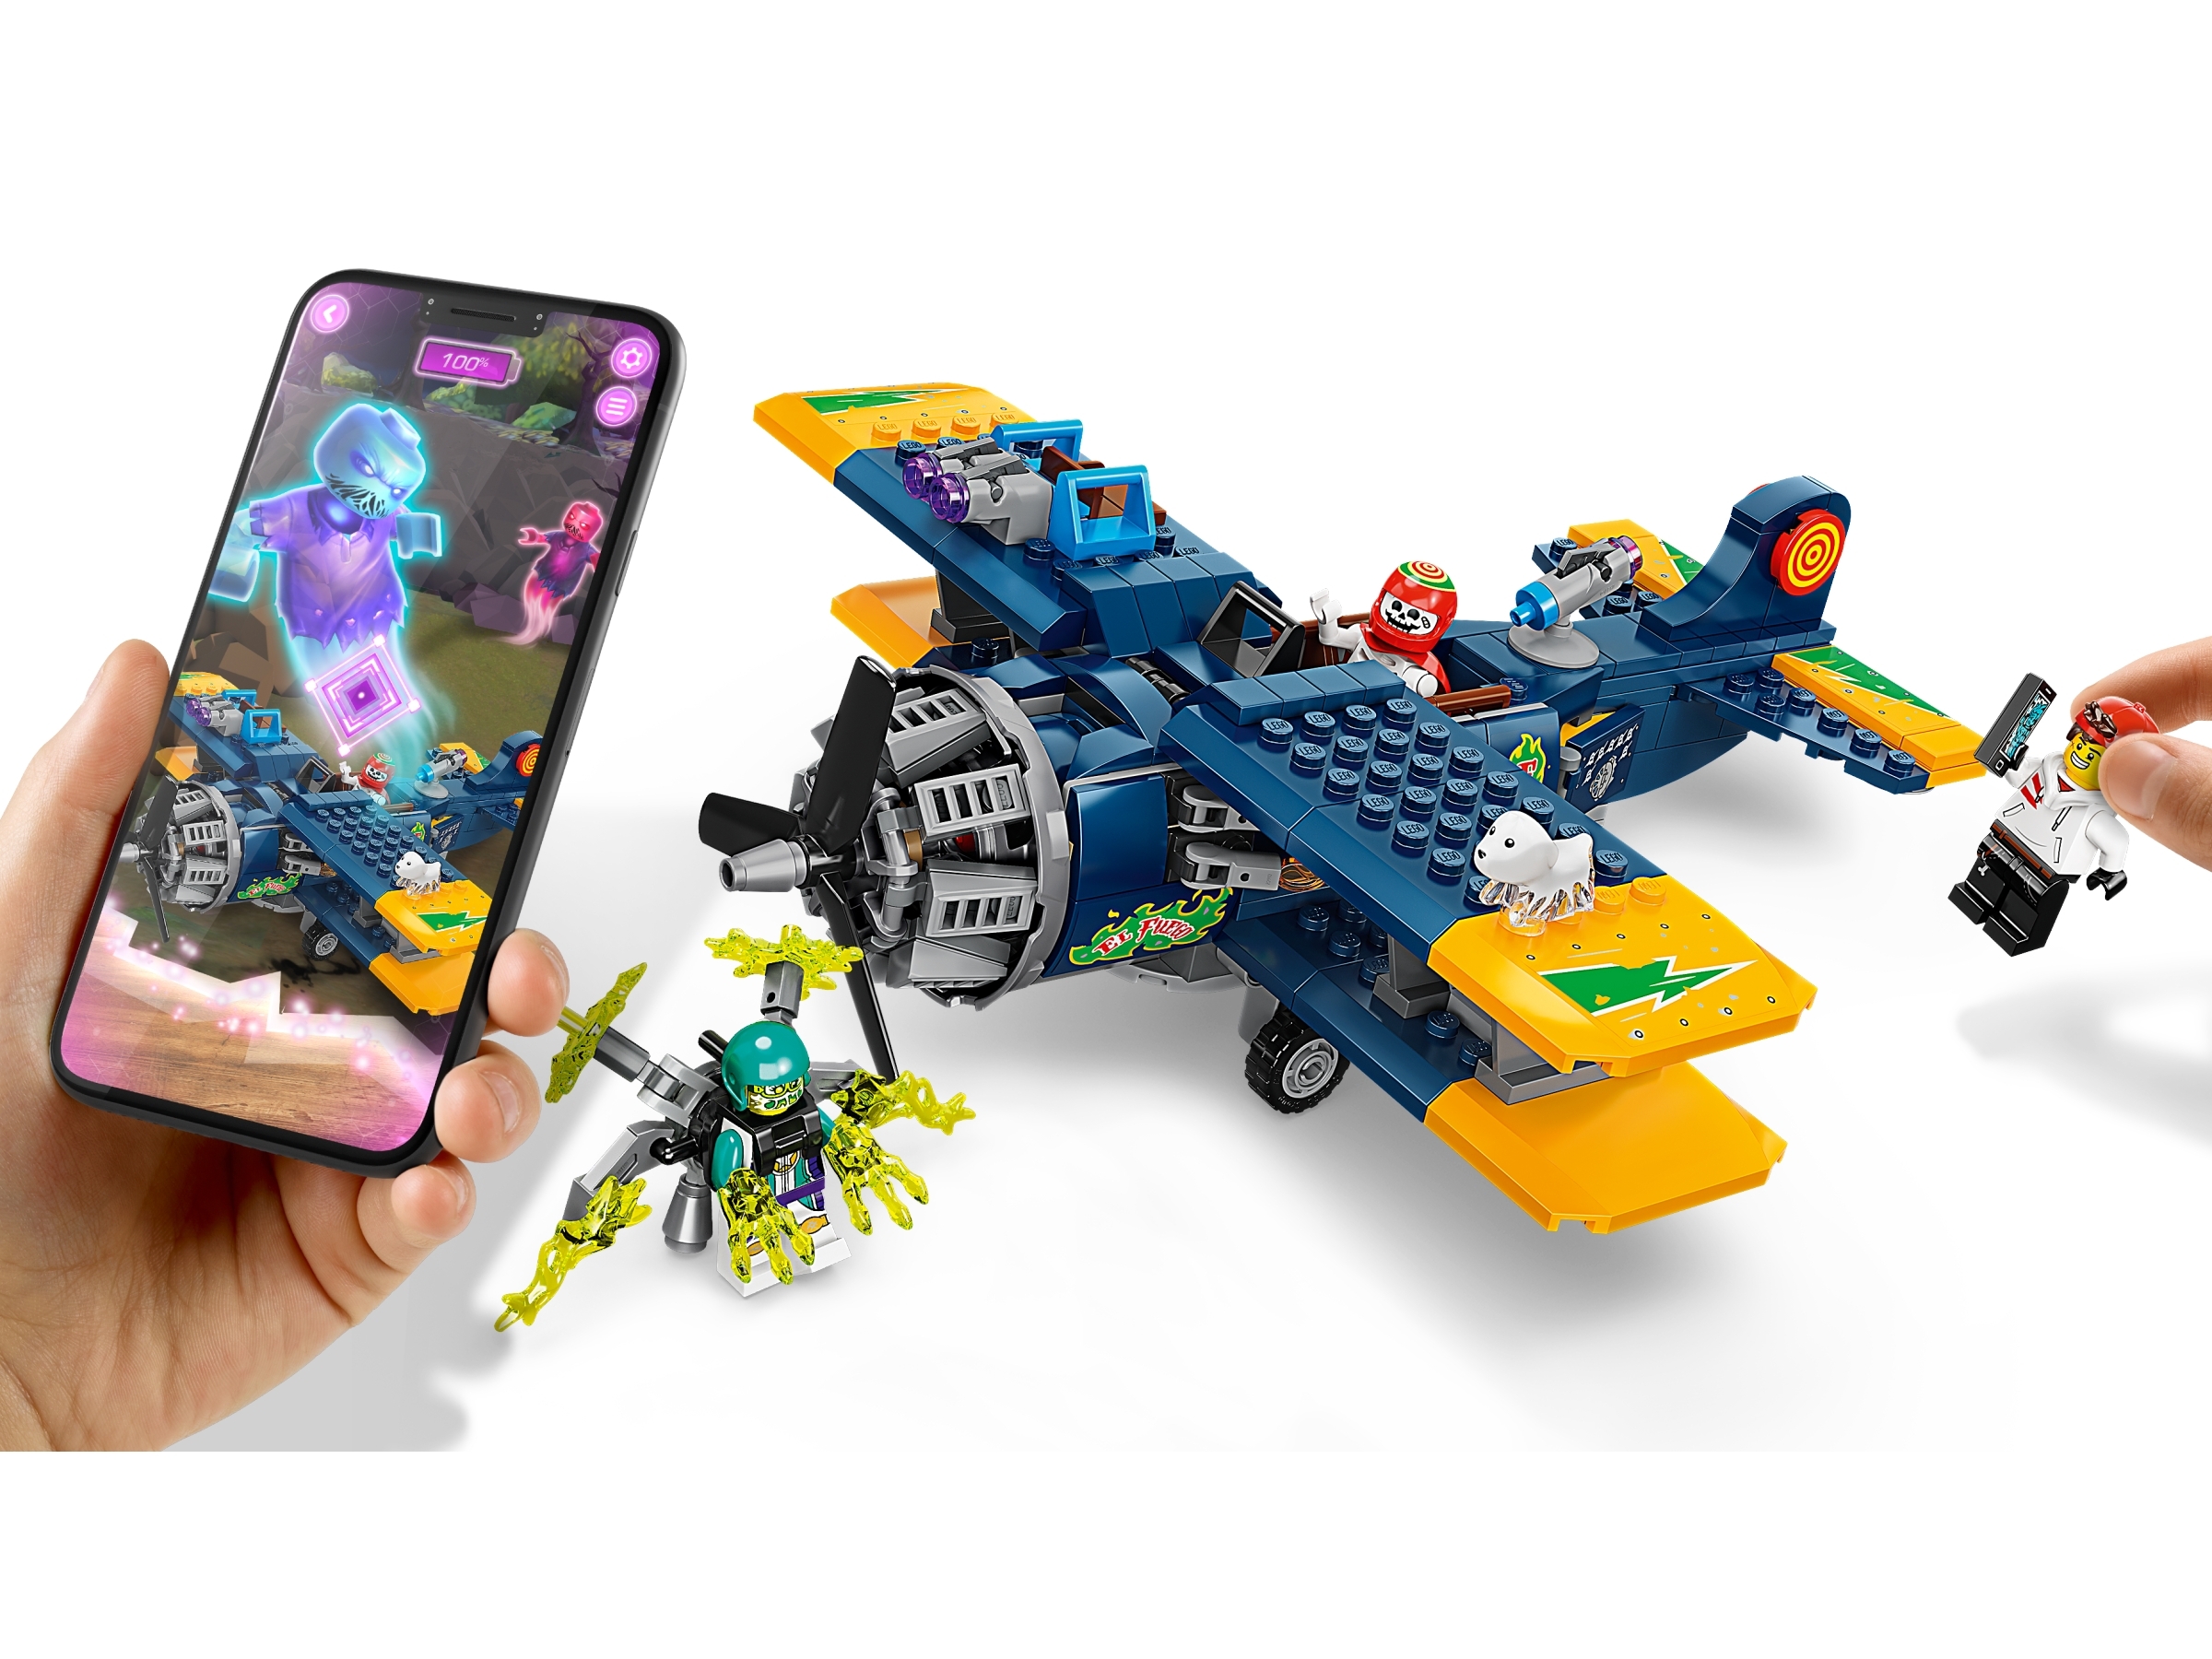 El Stunt Plane 70429 | Hidden Side Buy online the Official LEGO® Shop US